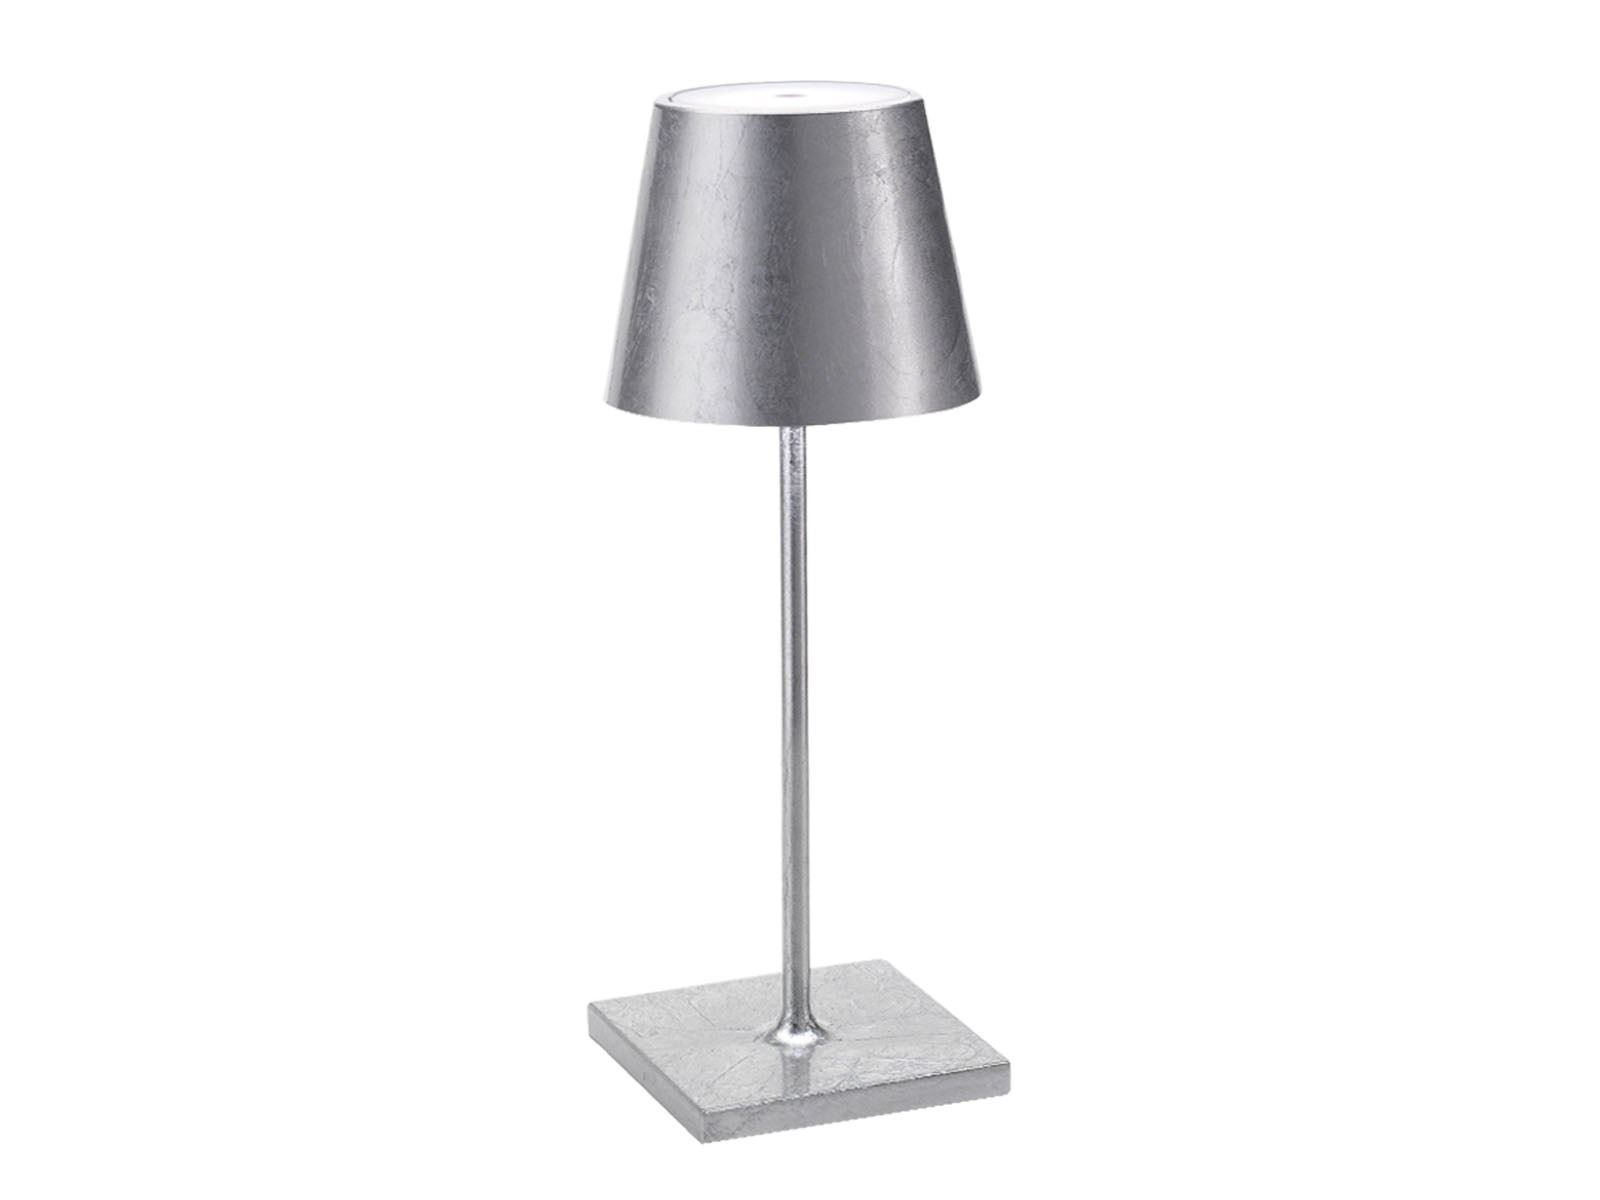 Lampa Zafferano Poldina LED Table 30 Silver Antique